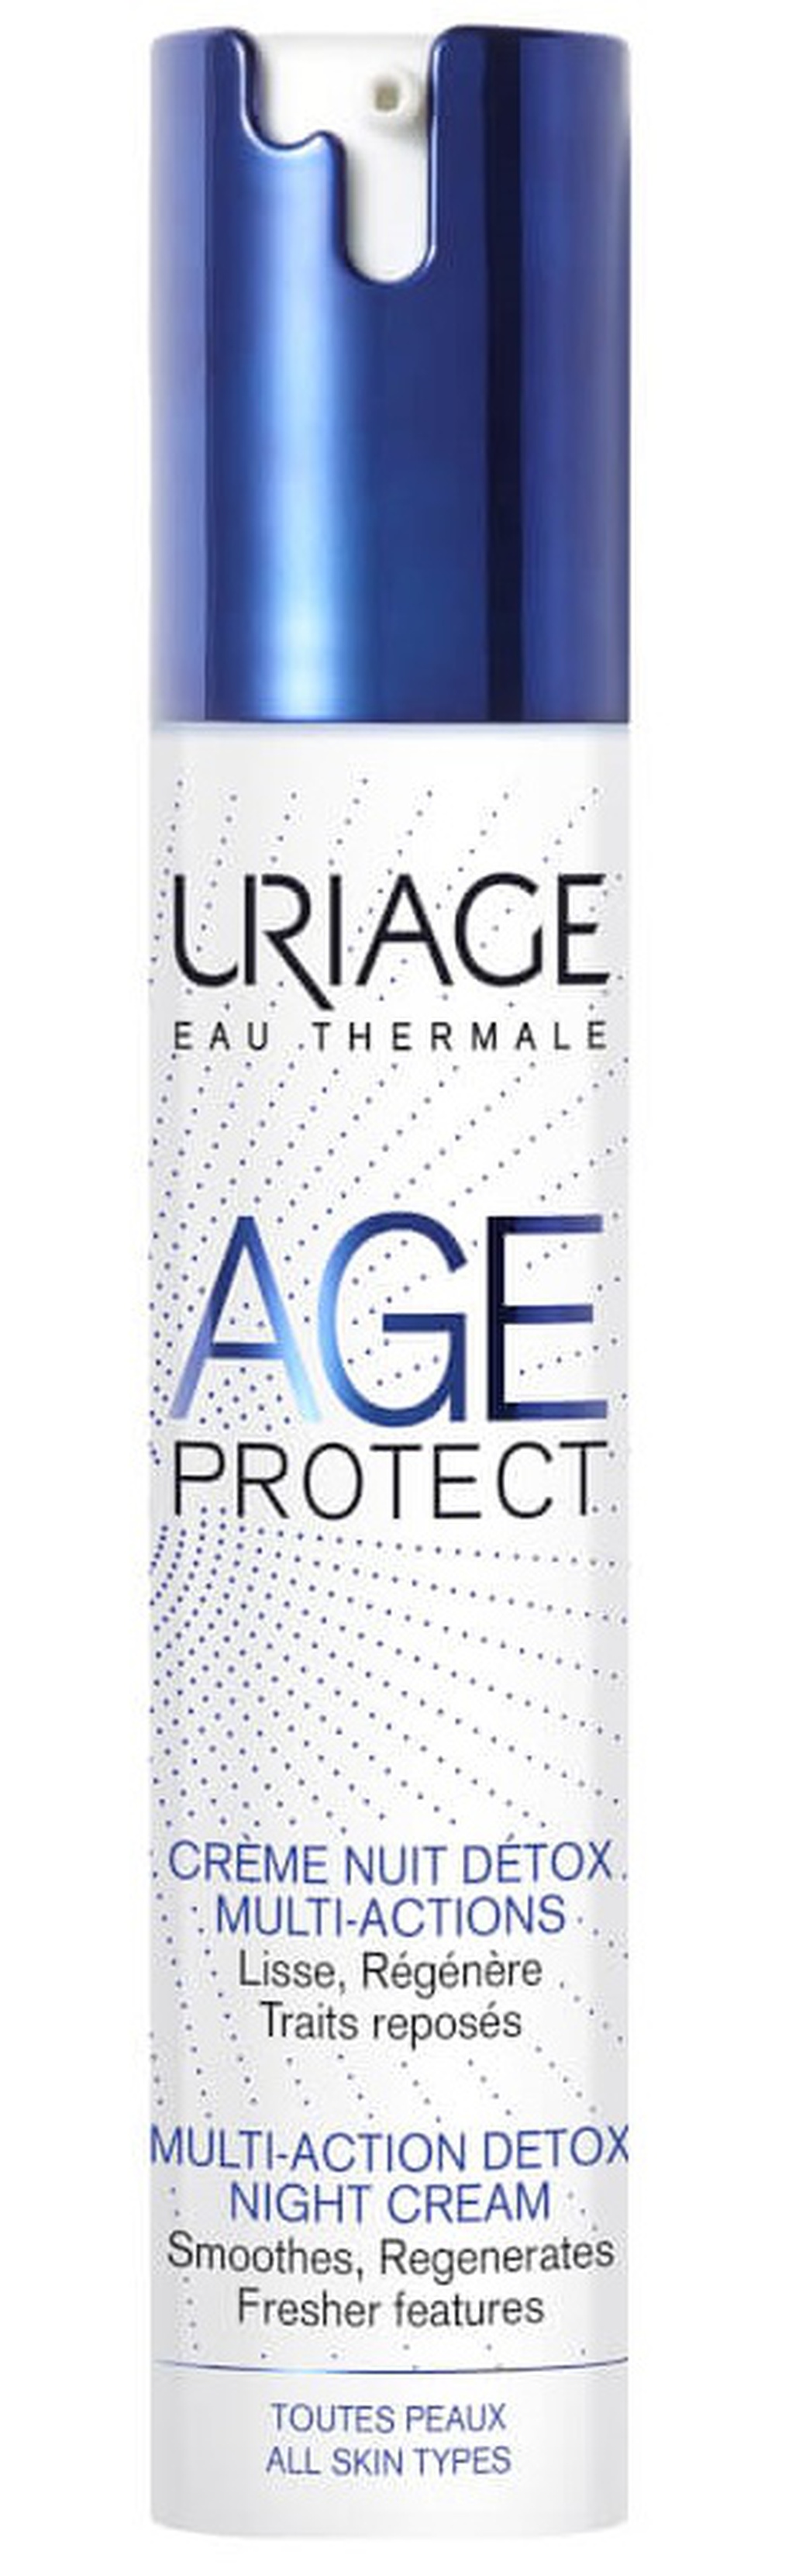 Uriage Age Protect многофункциональный ночной крем-Detox -помпа 40 мл фото